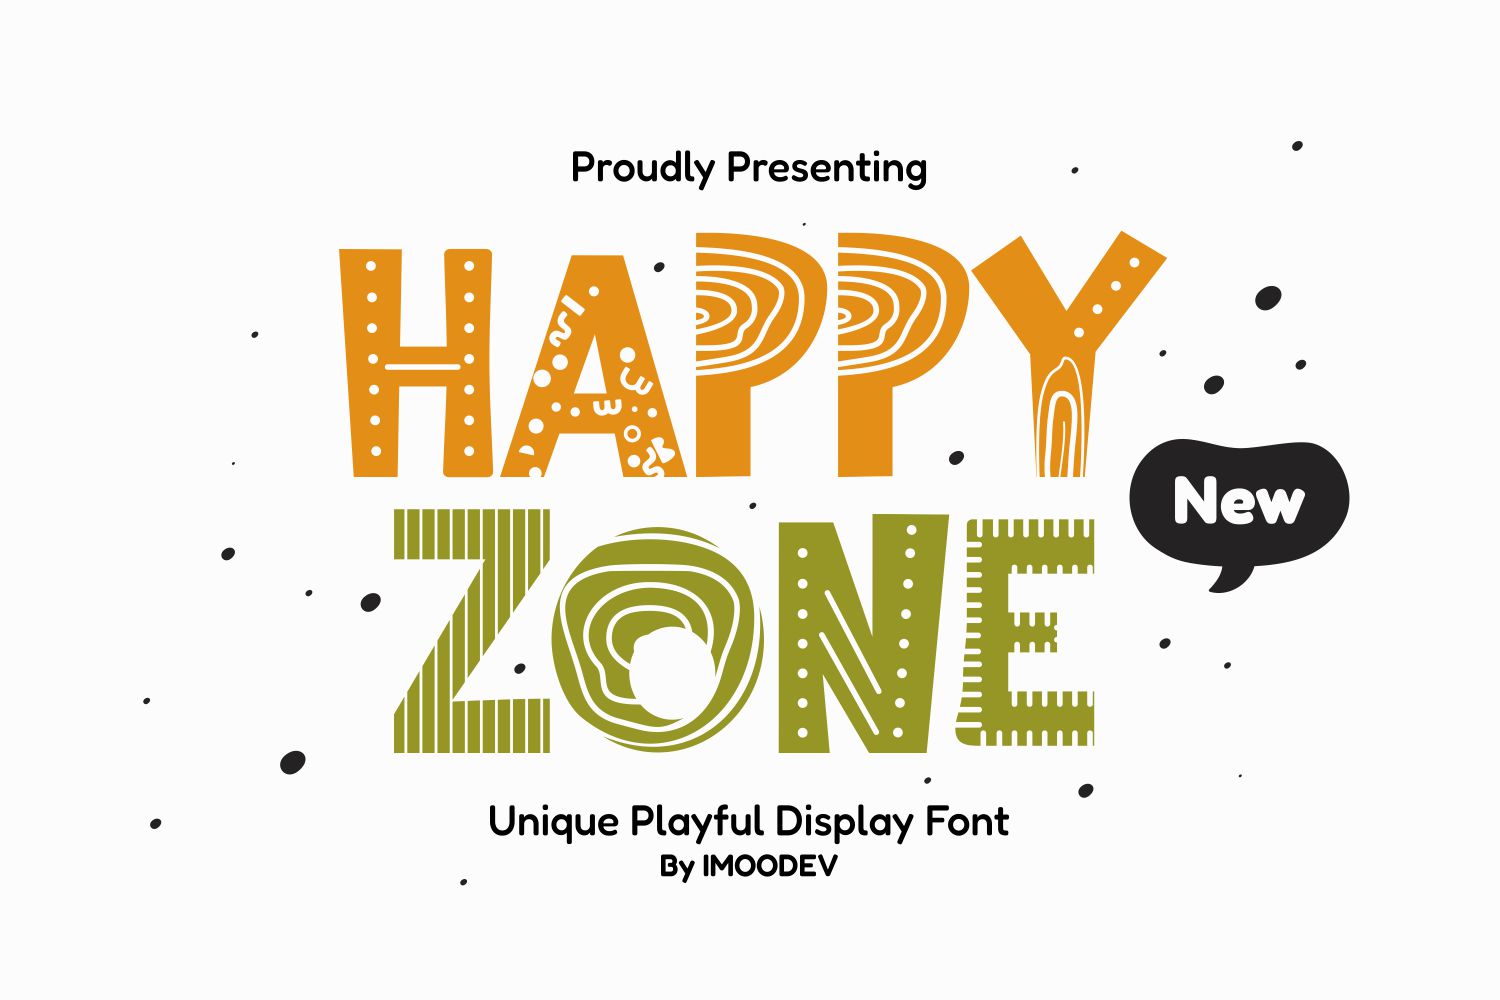 Happy Zone (1)